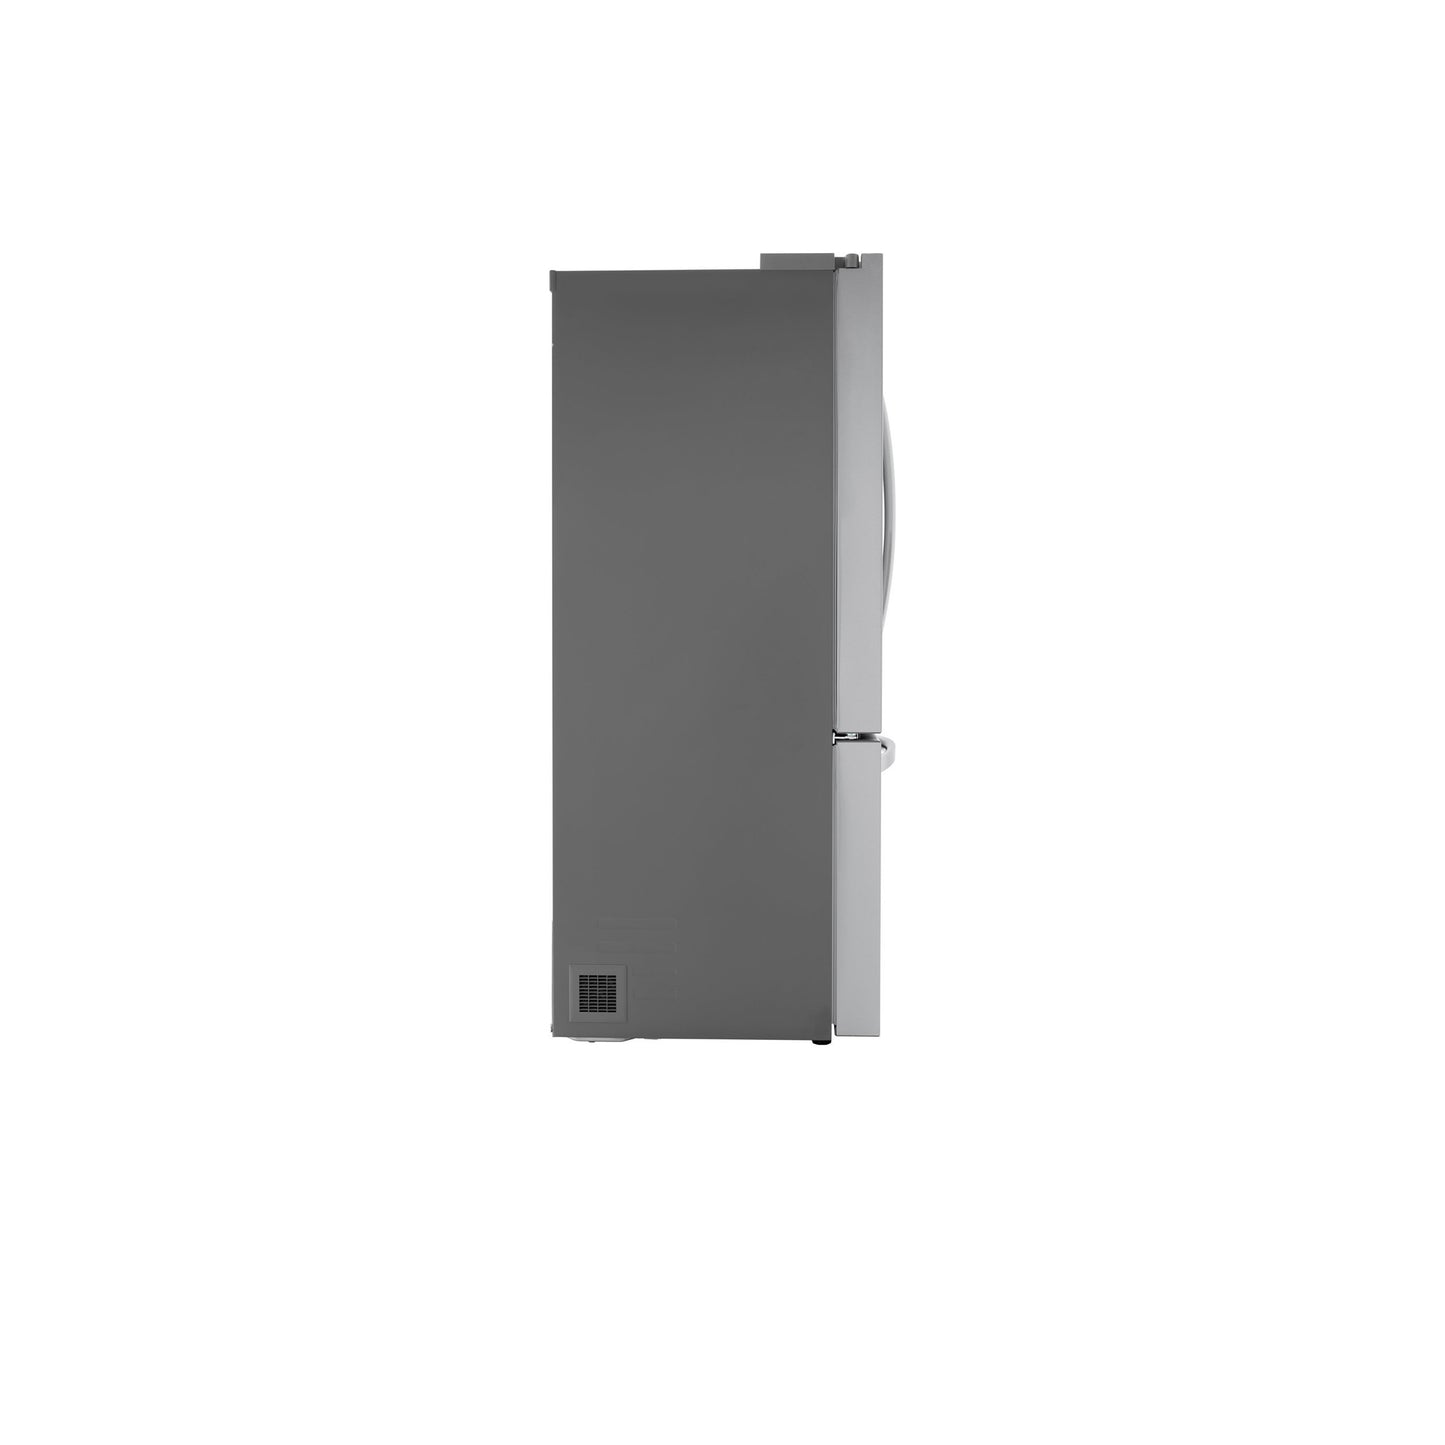 27 cu. ft. Smart Counter-Depth MAX™ French Door Refrigerator